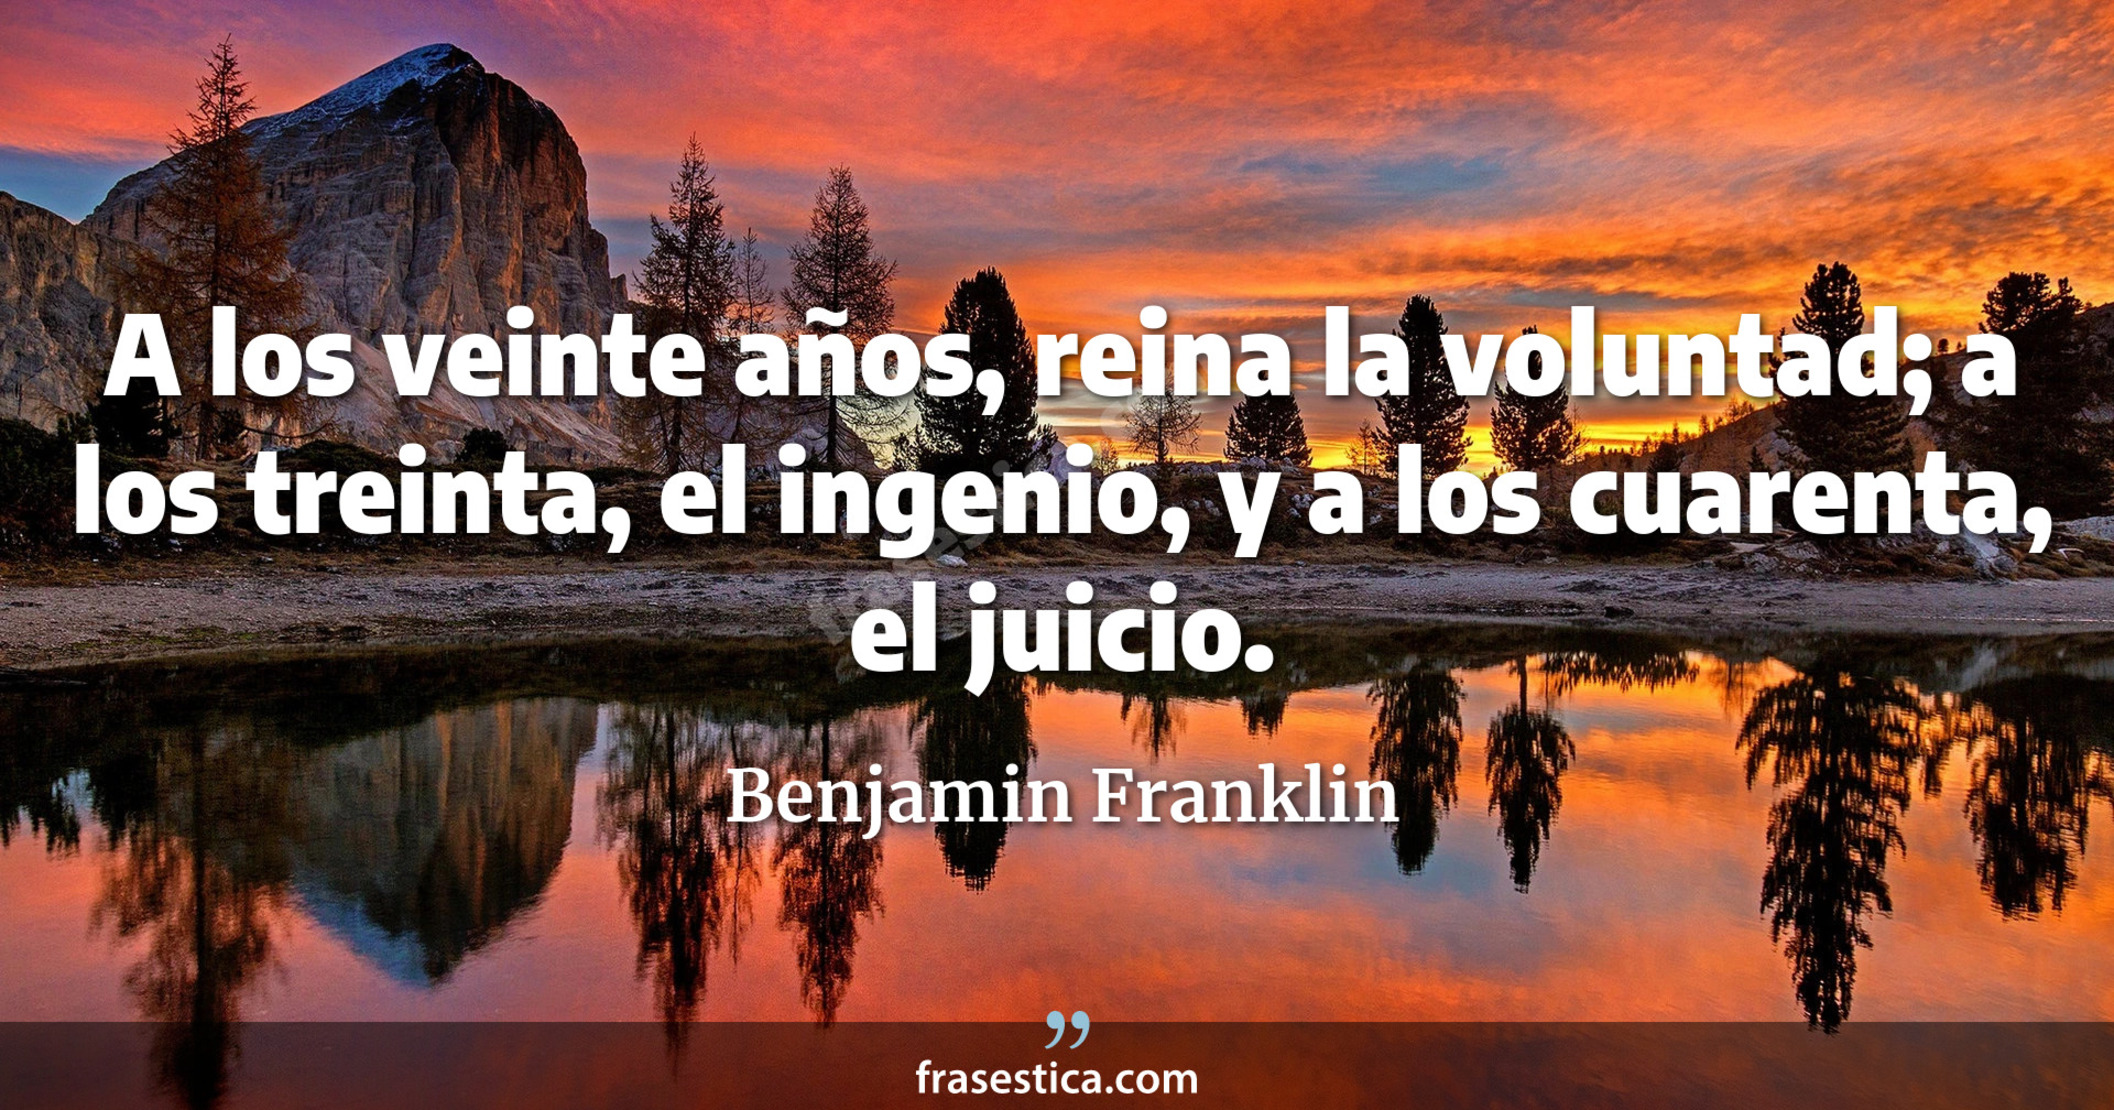 A los veinte años, reina la voluntad; a los treinta, el ingenio, y a los cuarenta, el juicio. - Benjamin Franklin